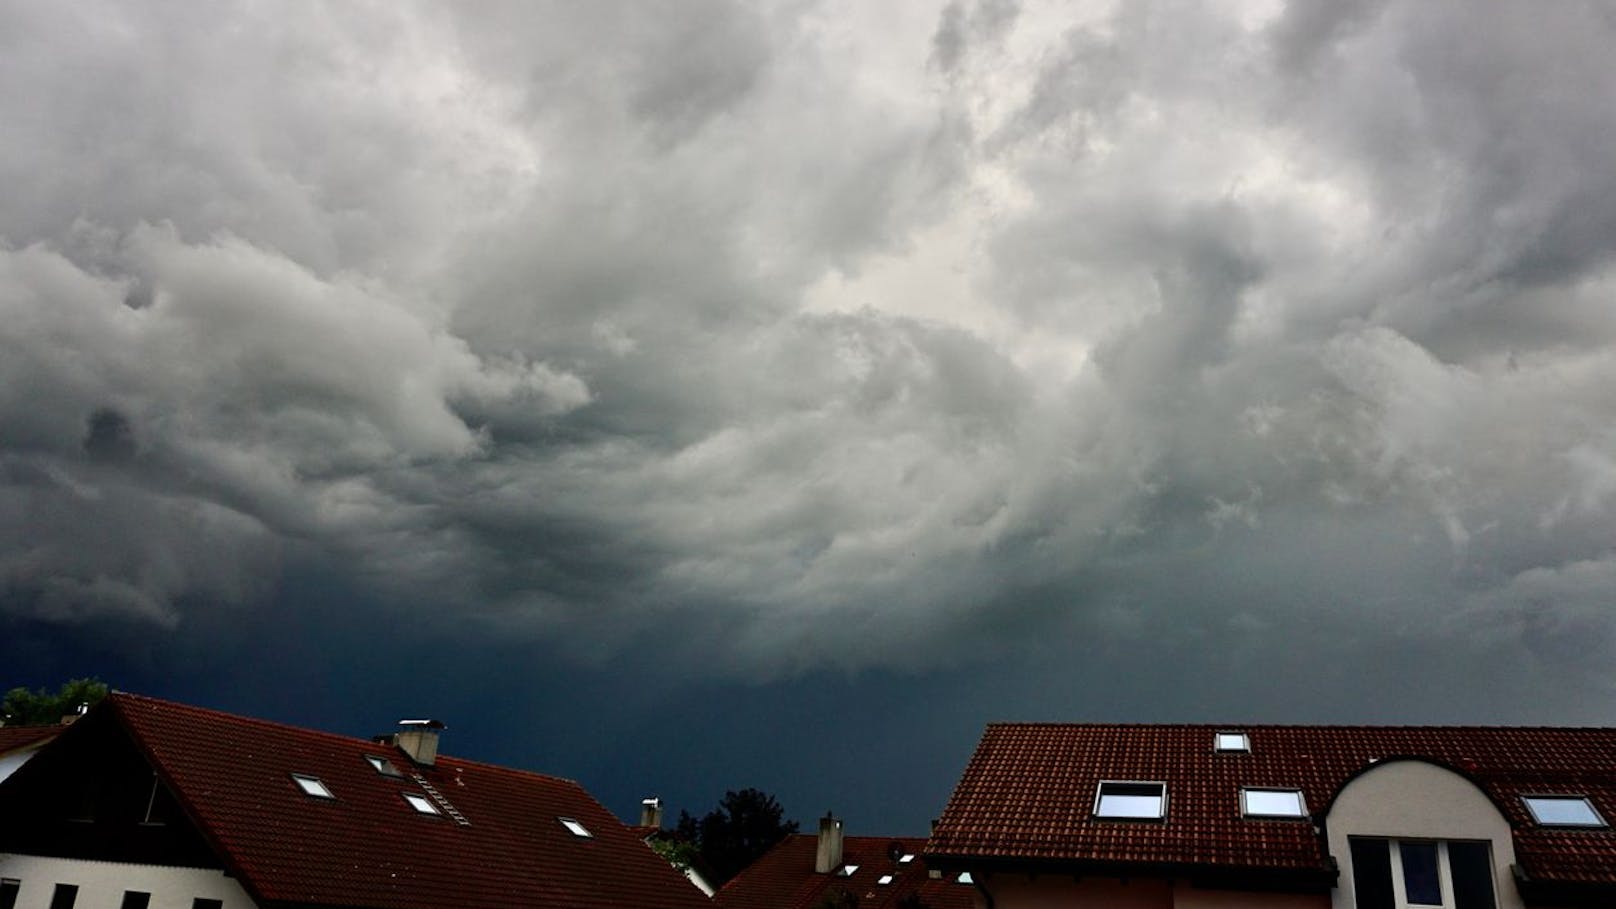 "Fenster, Tür schließen" – heftiger Sturm wütet in Wien